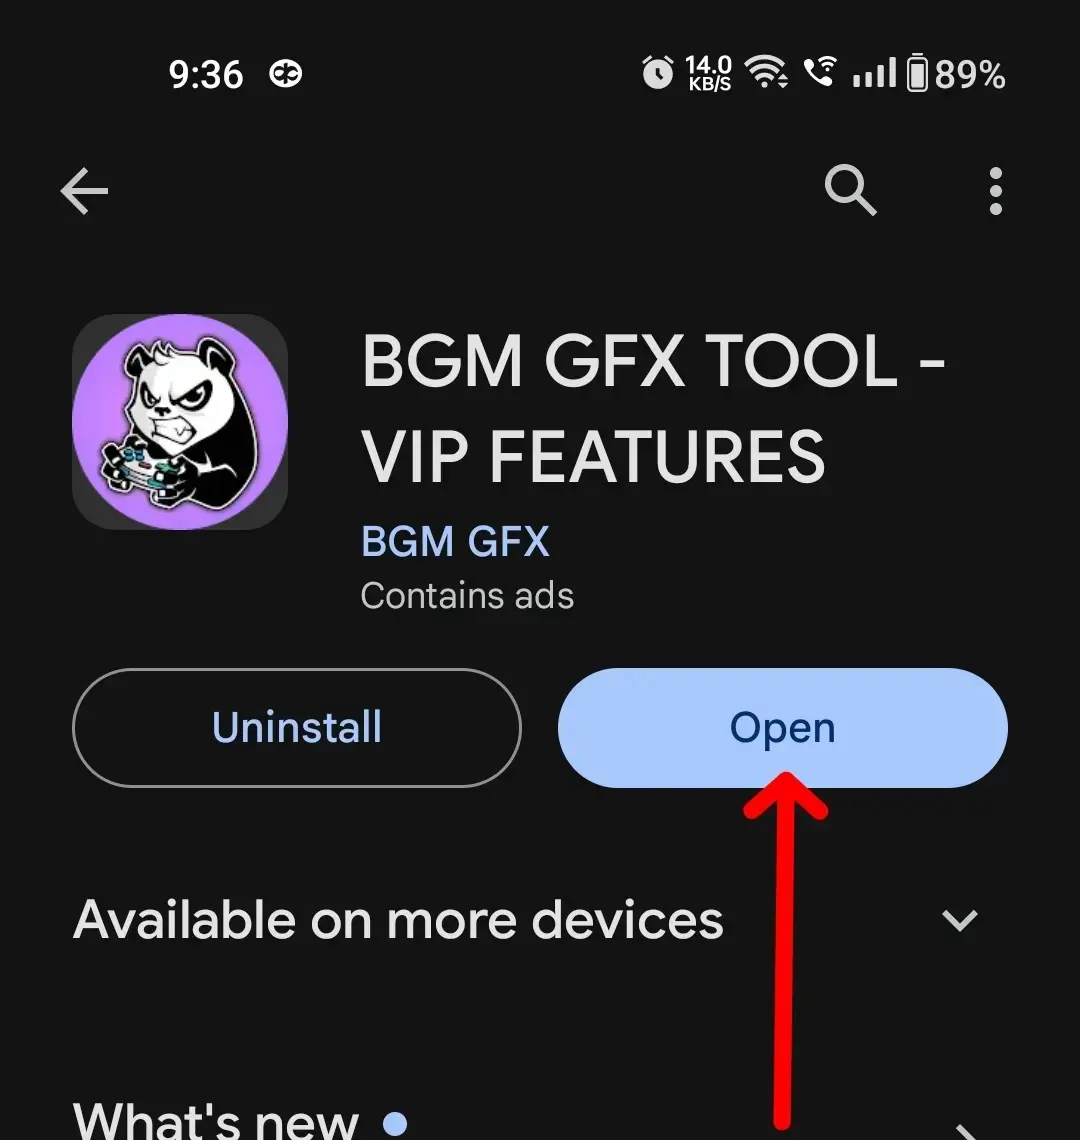 BGM GFx Tool